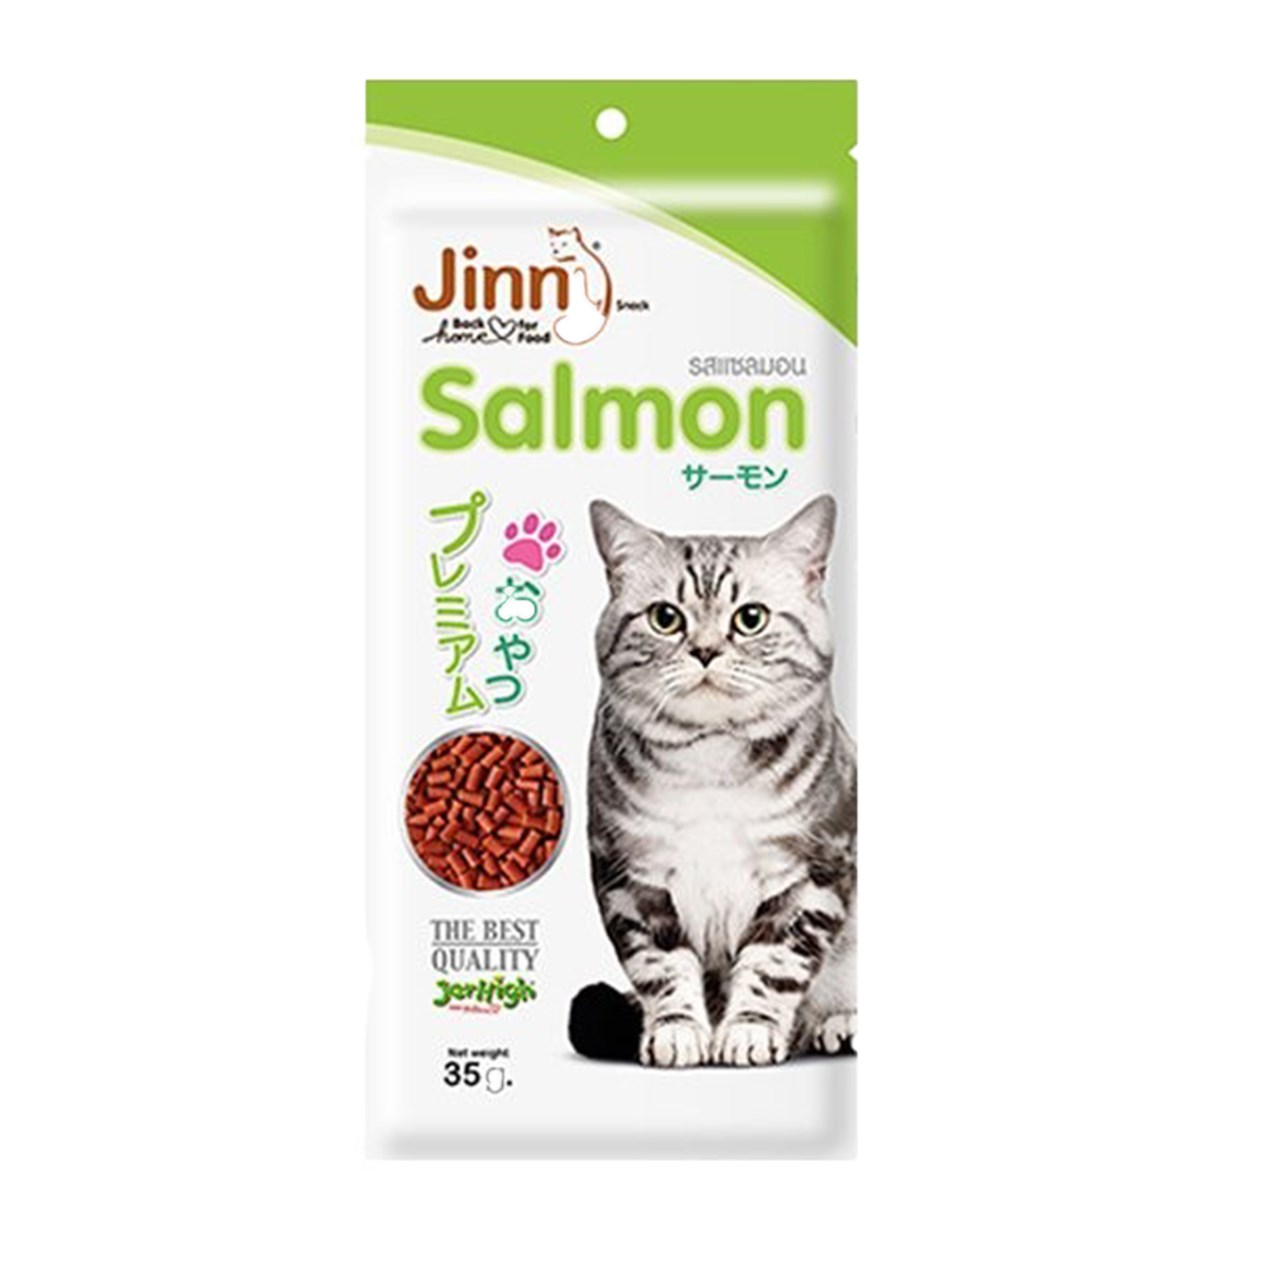 غذا خشک گربه جرهای با طعم سالمون 35 گرم